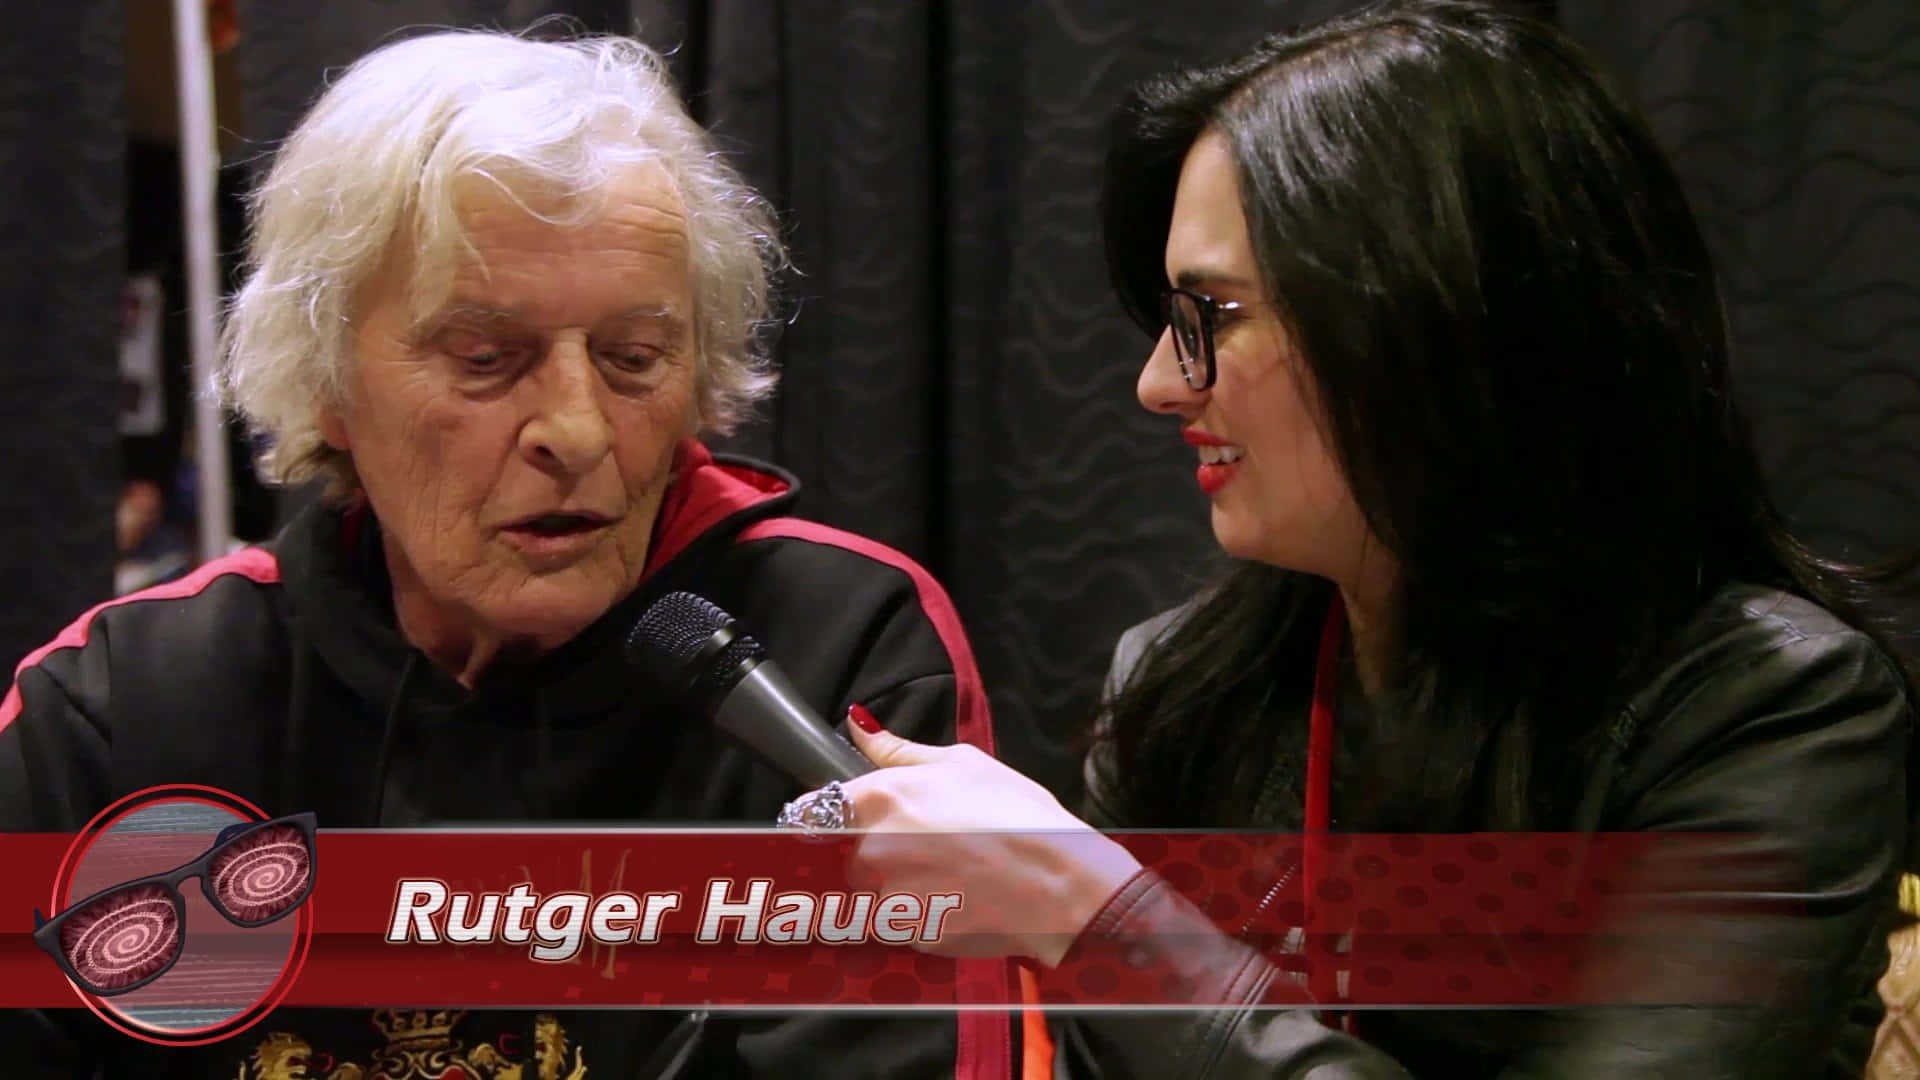 Rutger Hauer bliver interviewet på den røde løber. Wallpaper